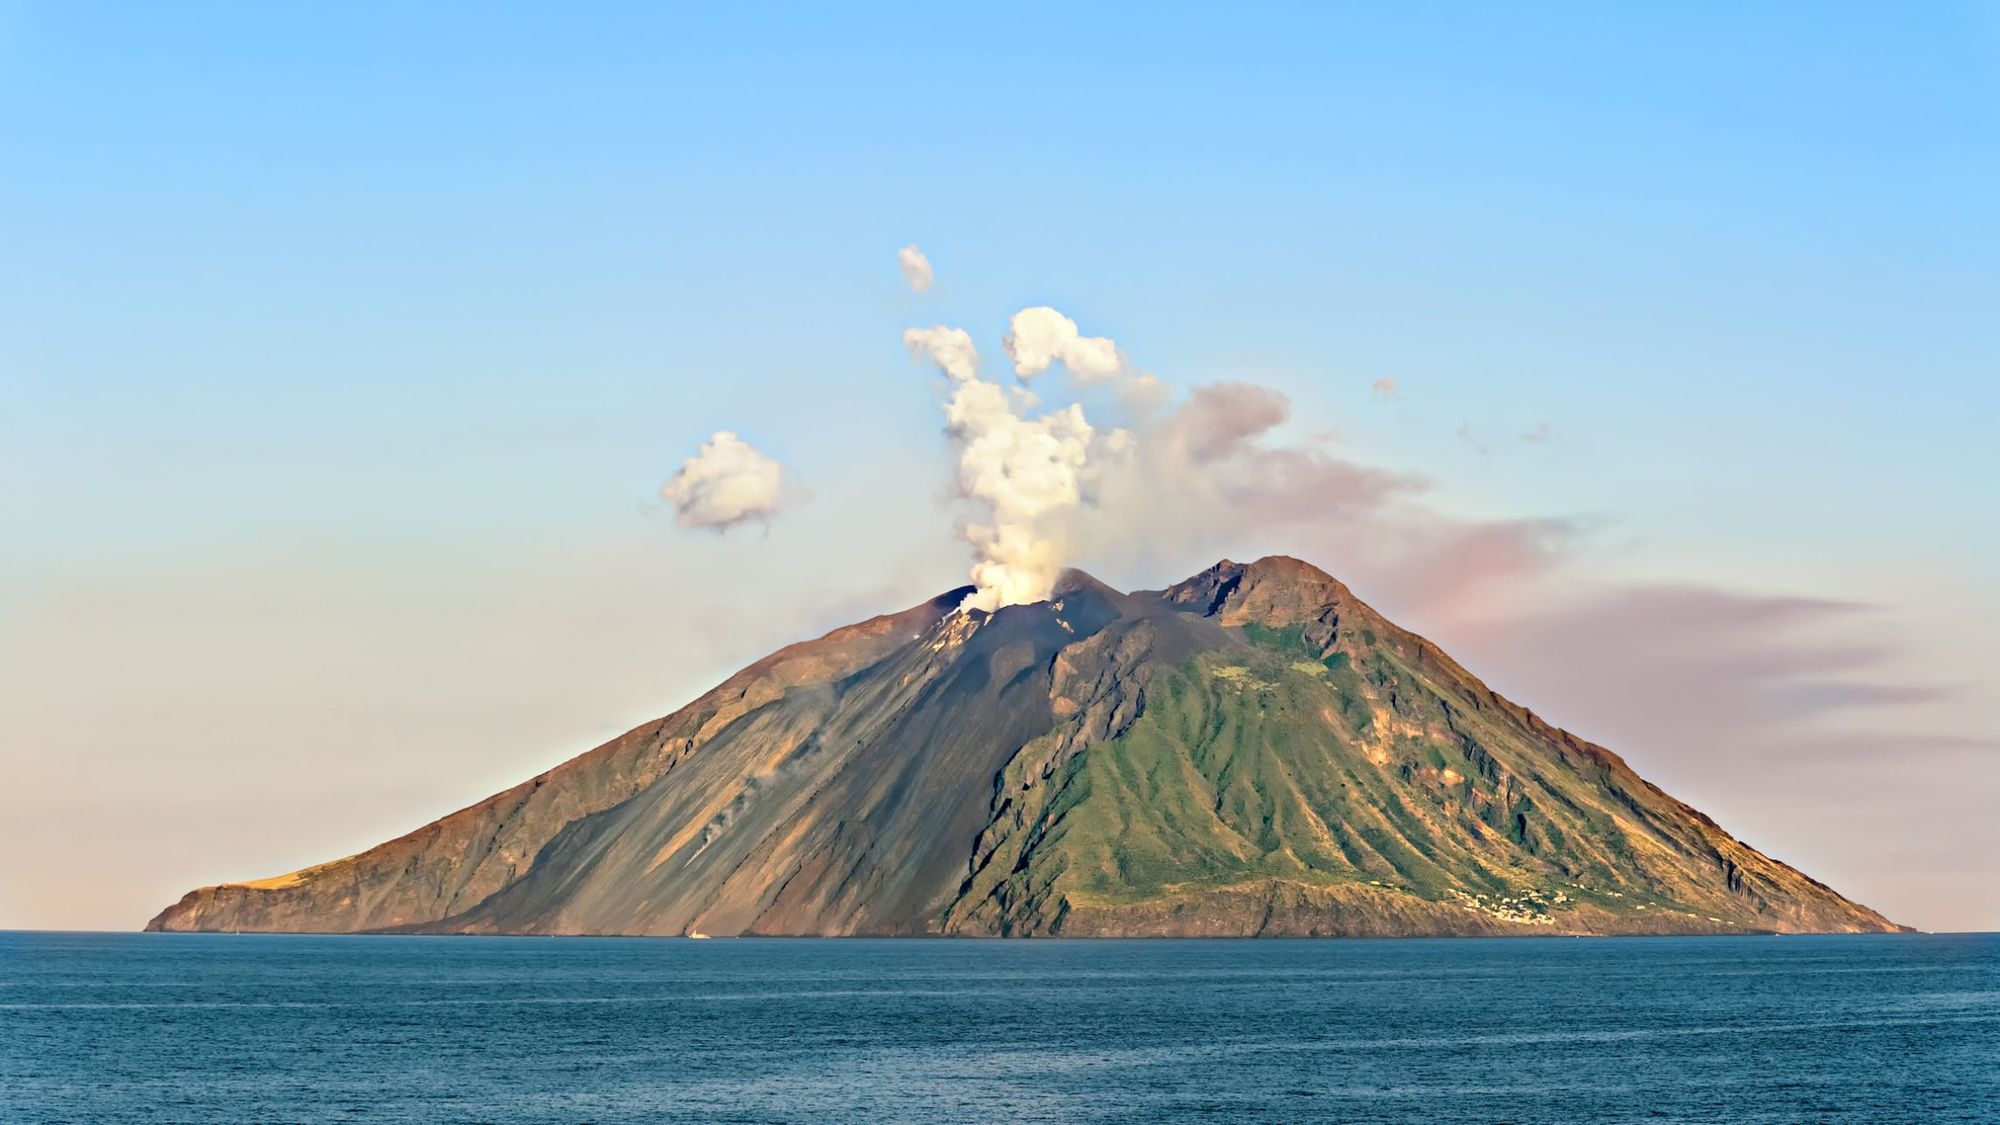 Stromboli volcano, off the north coast of Sicily, in the Tyrrhenian Sea.